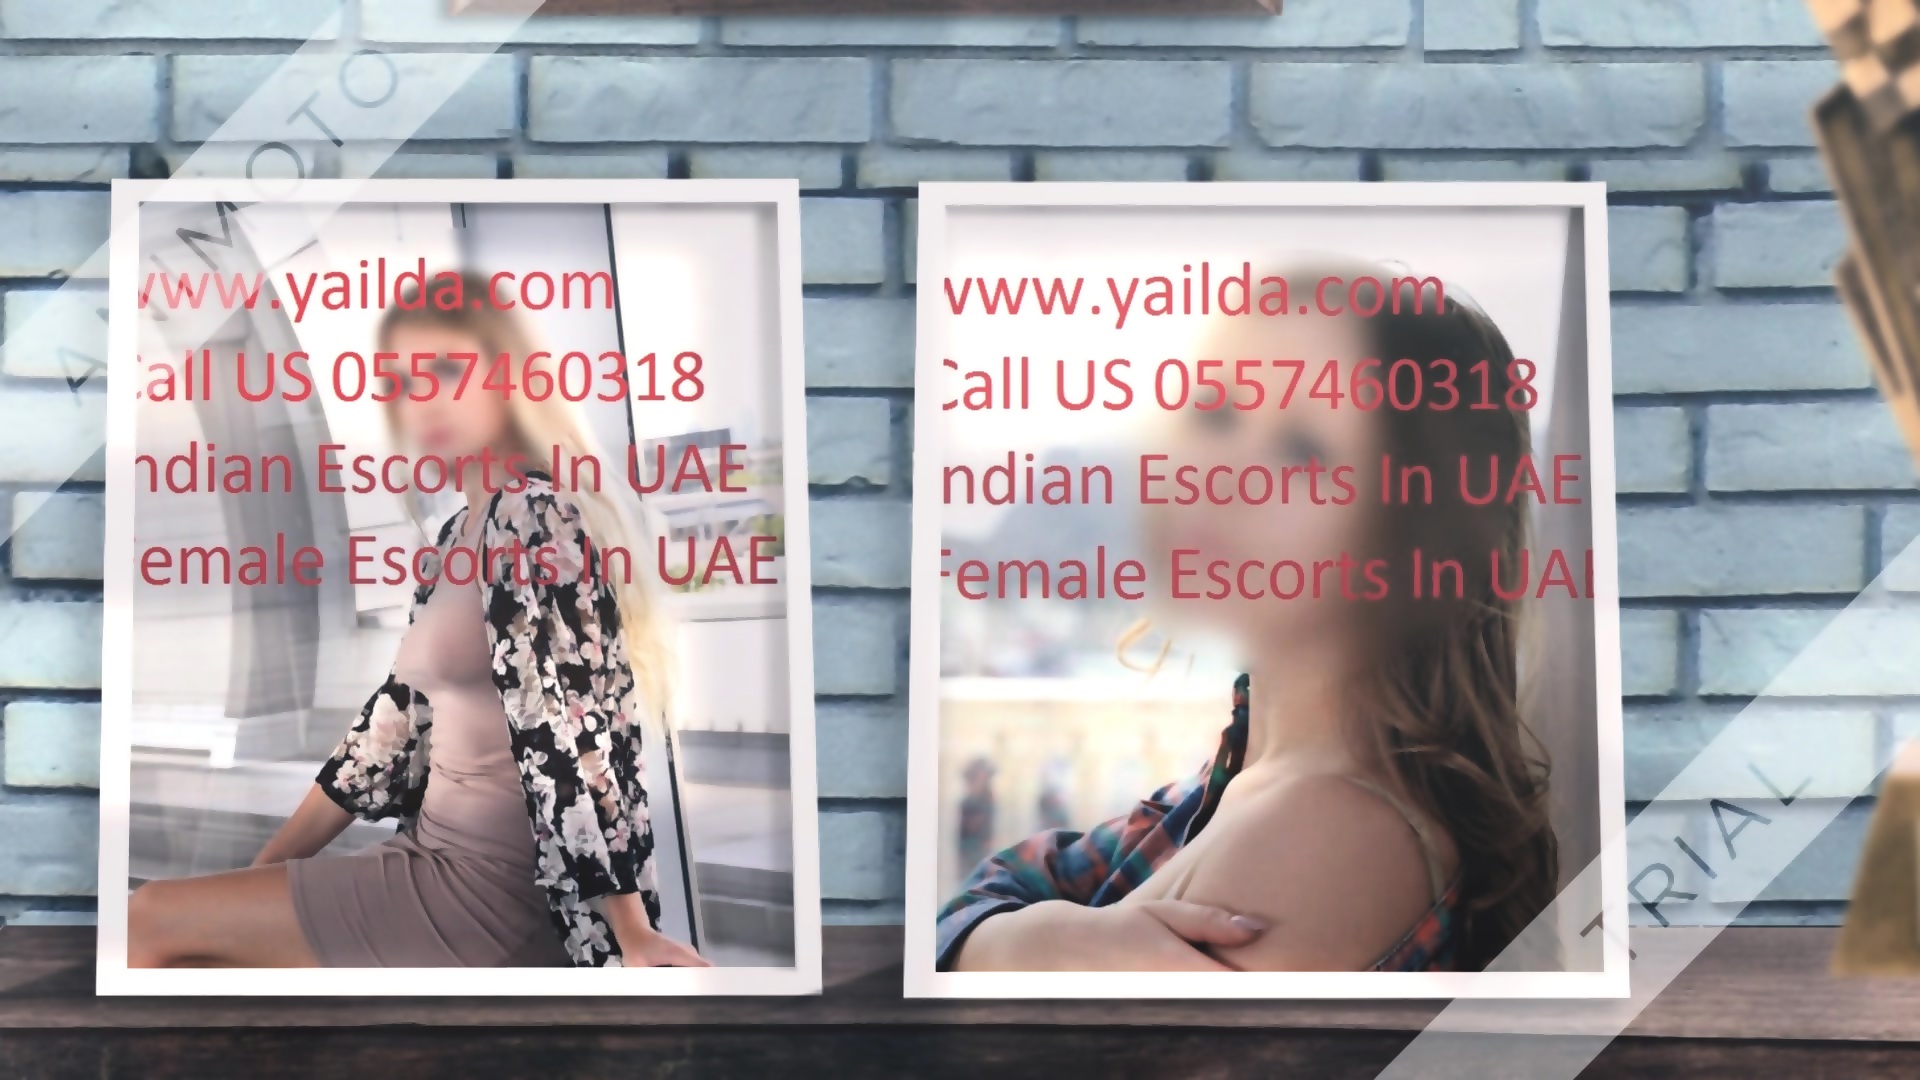 Escorts Services In Bur Dubai 0557460318 Bur Dubai Call Girls Uae Eporner